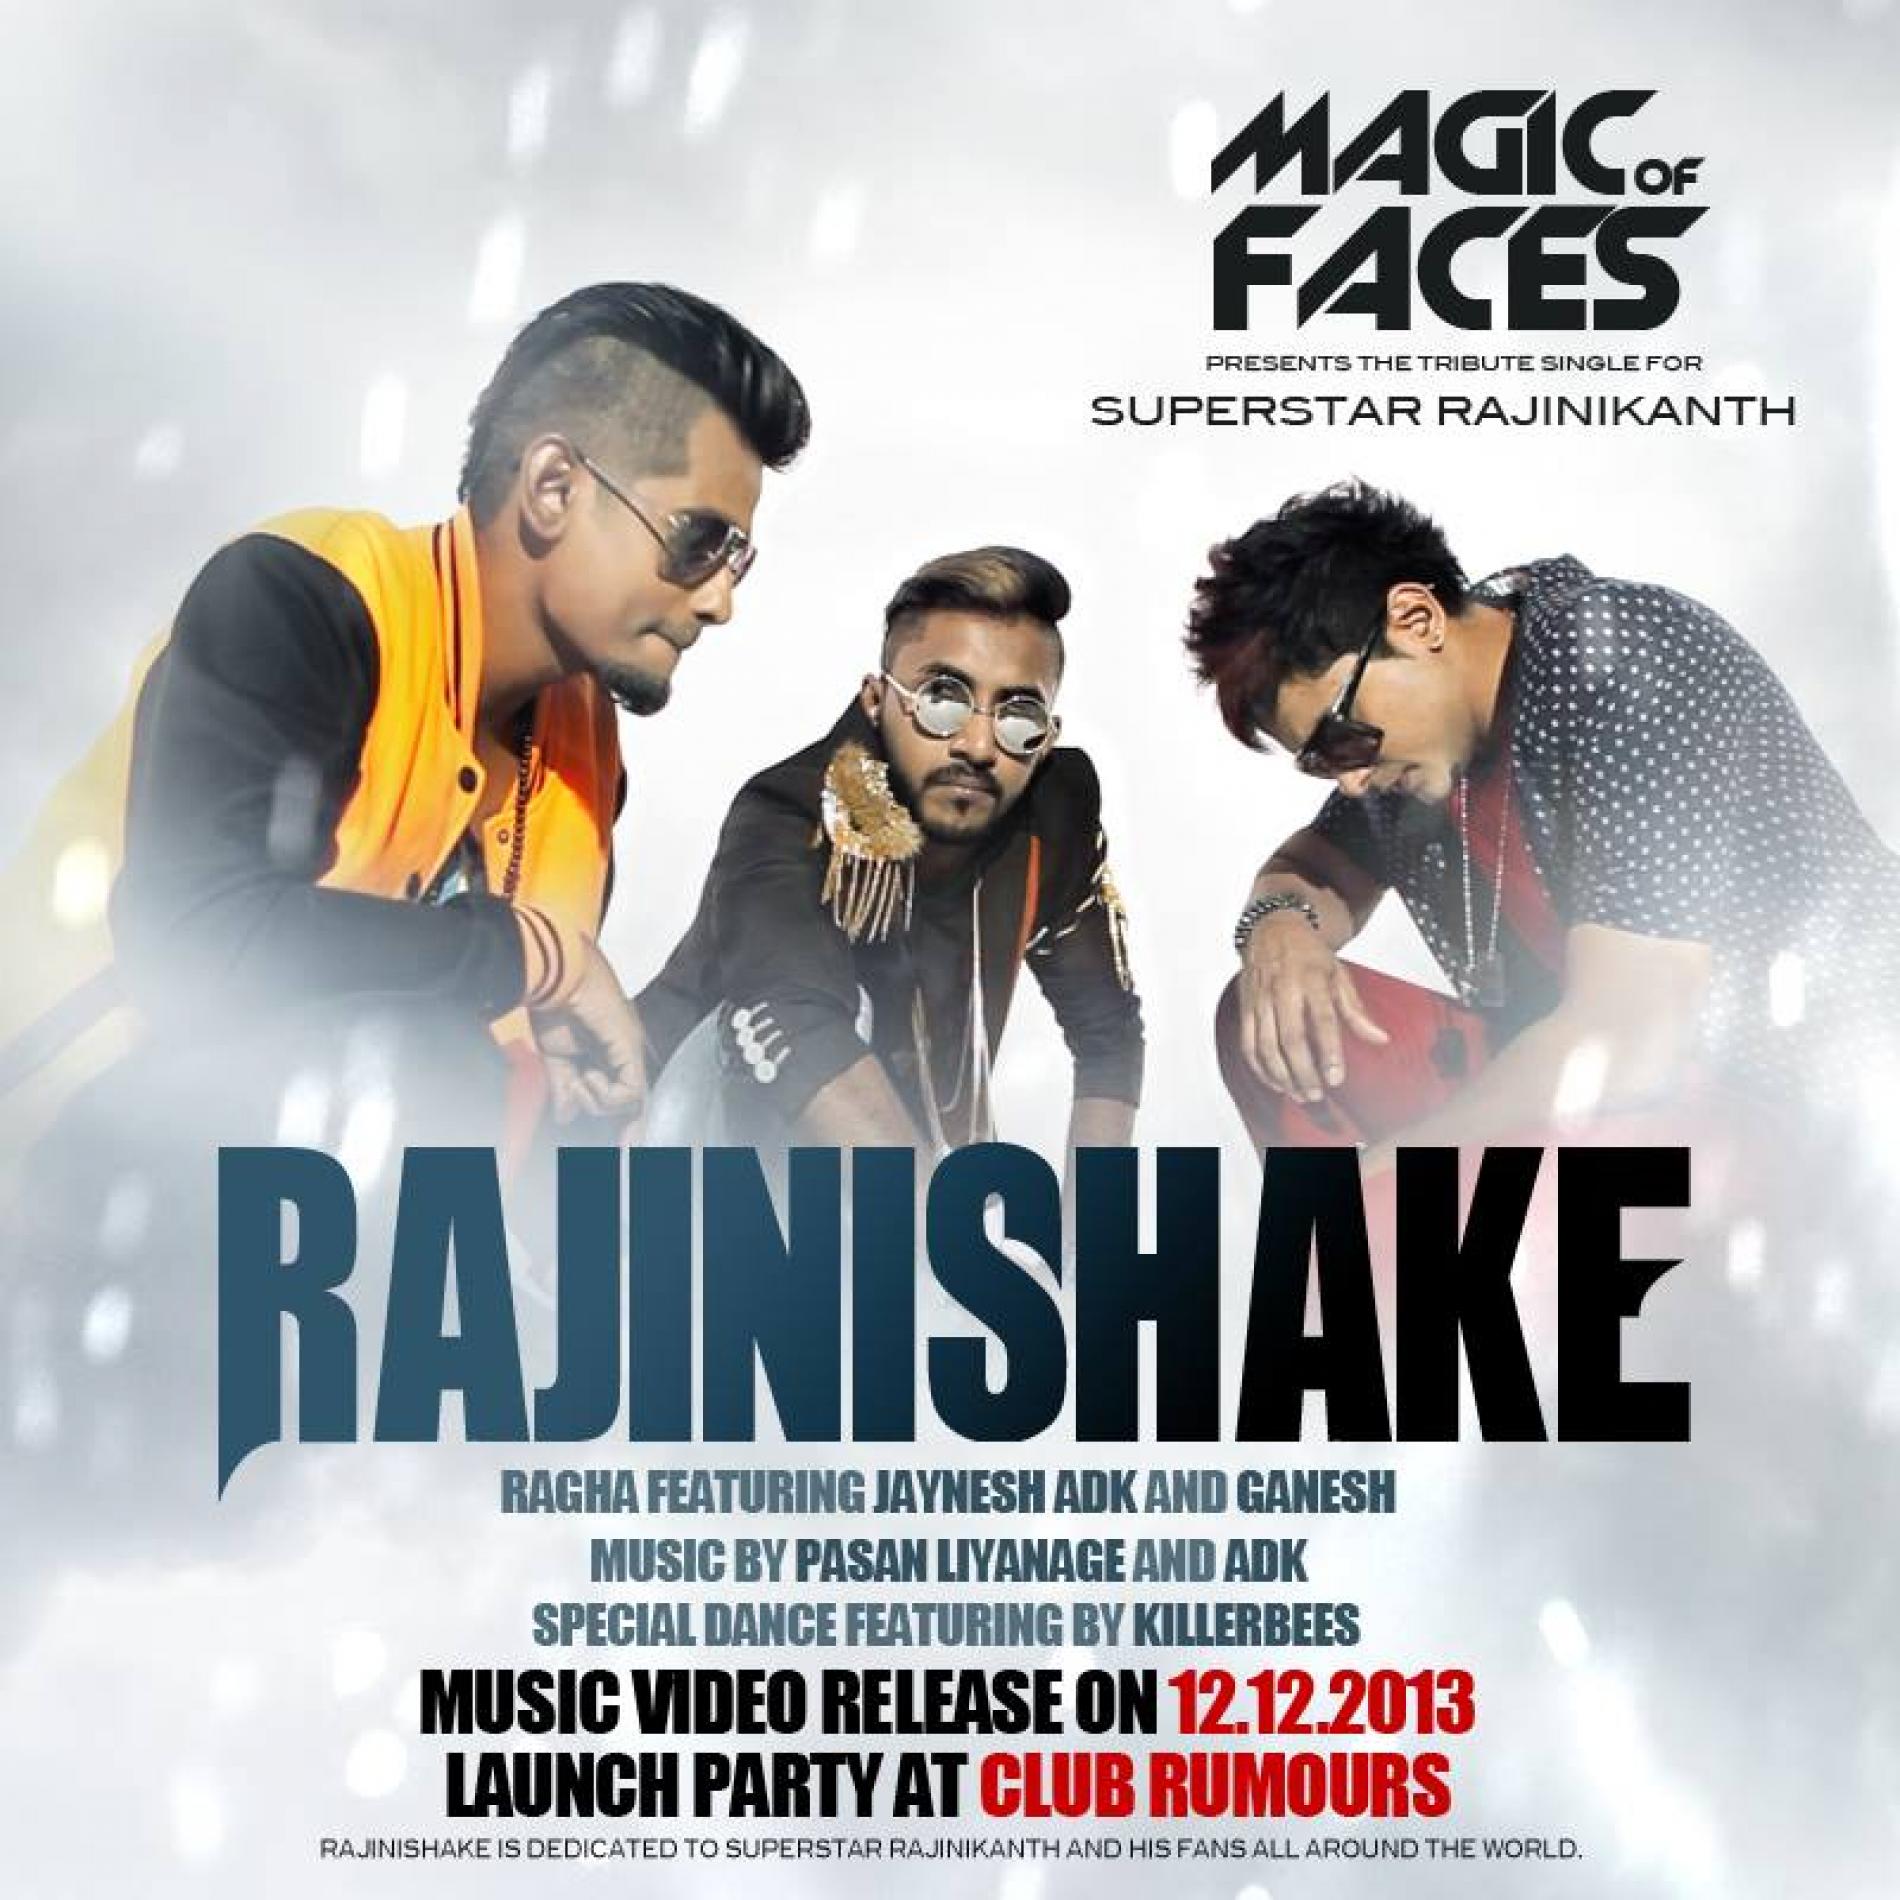 Rajinishake By Ragha Ft Dinesh Kanagaratnam, Jaynesh & Ganesh